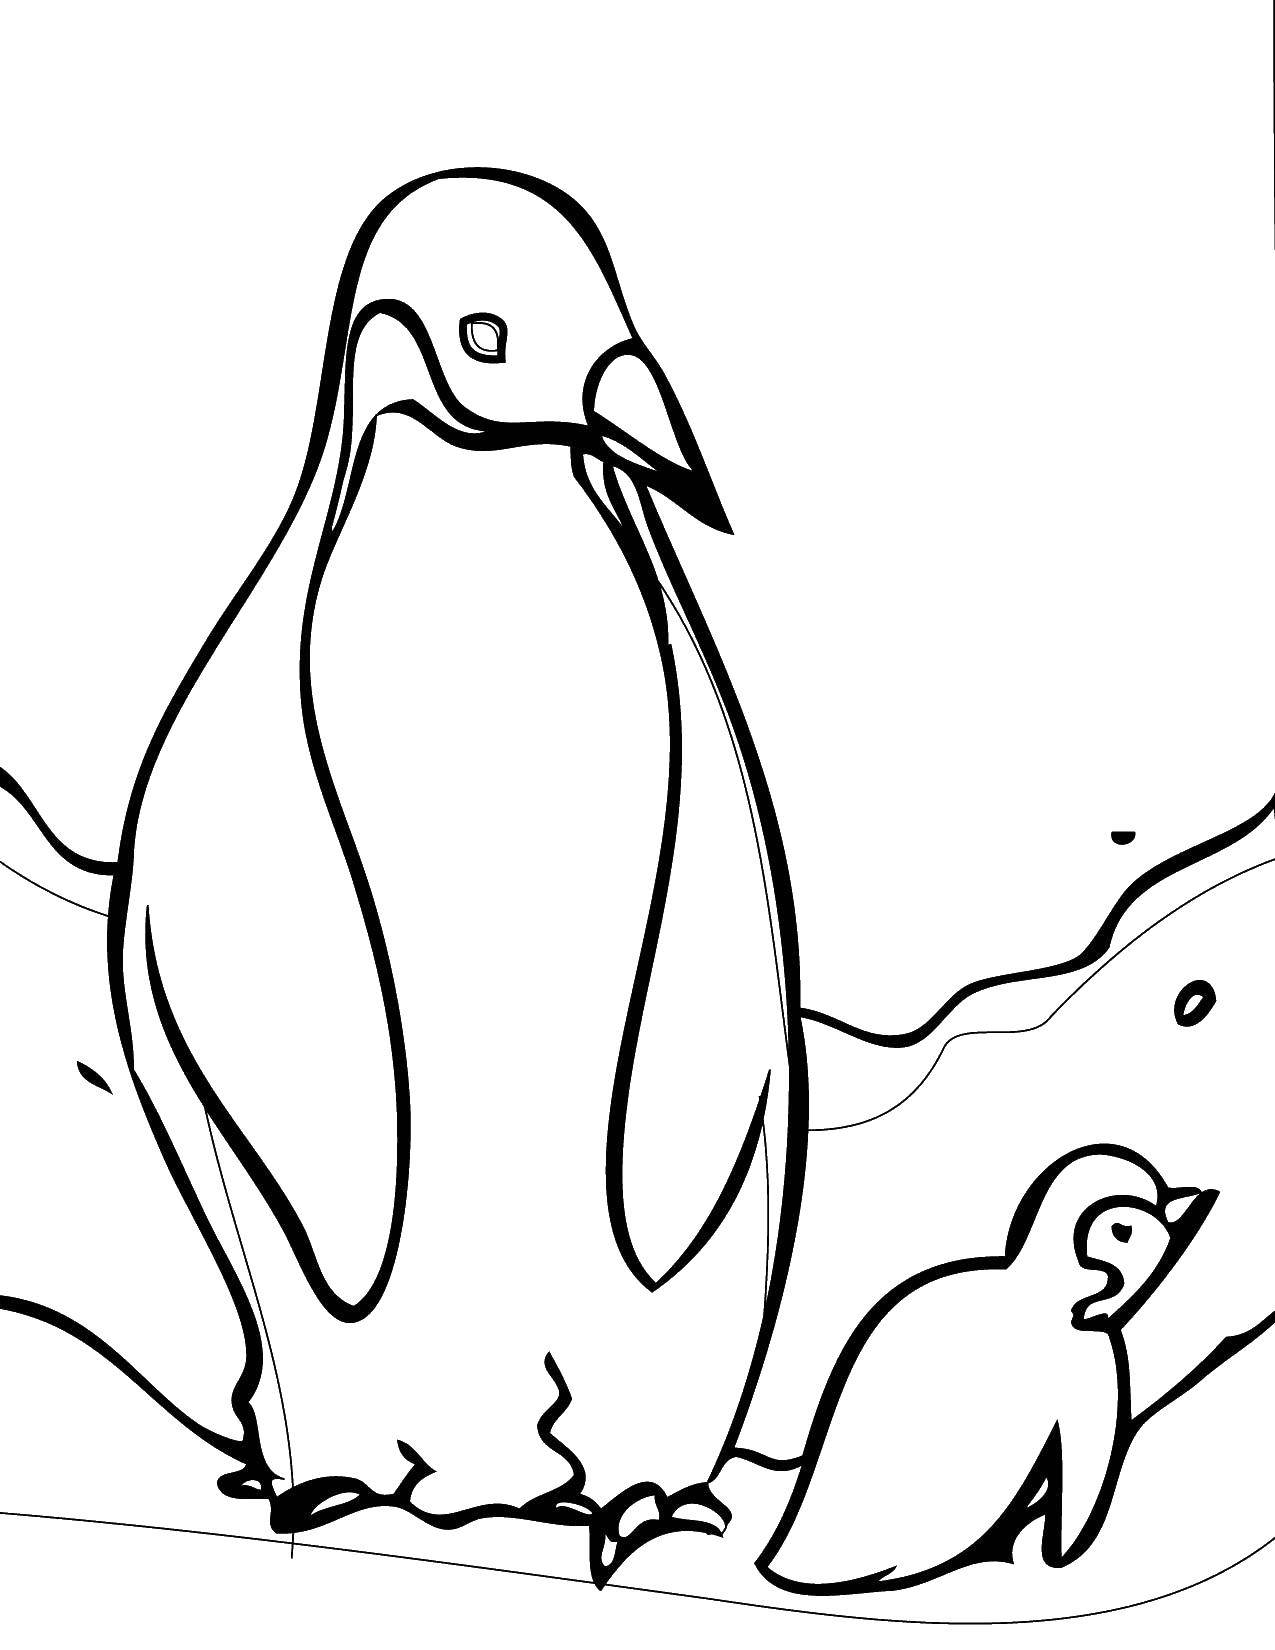 Название: Раскраска Пингвинчики. Категория: Дикие животные. Теги: Птицы, пингвин.